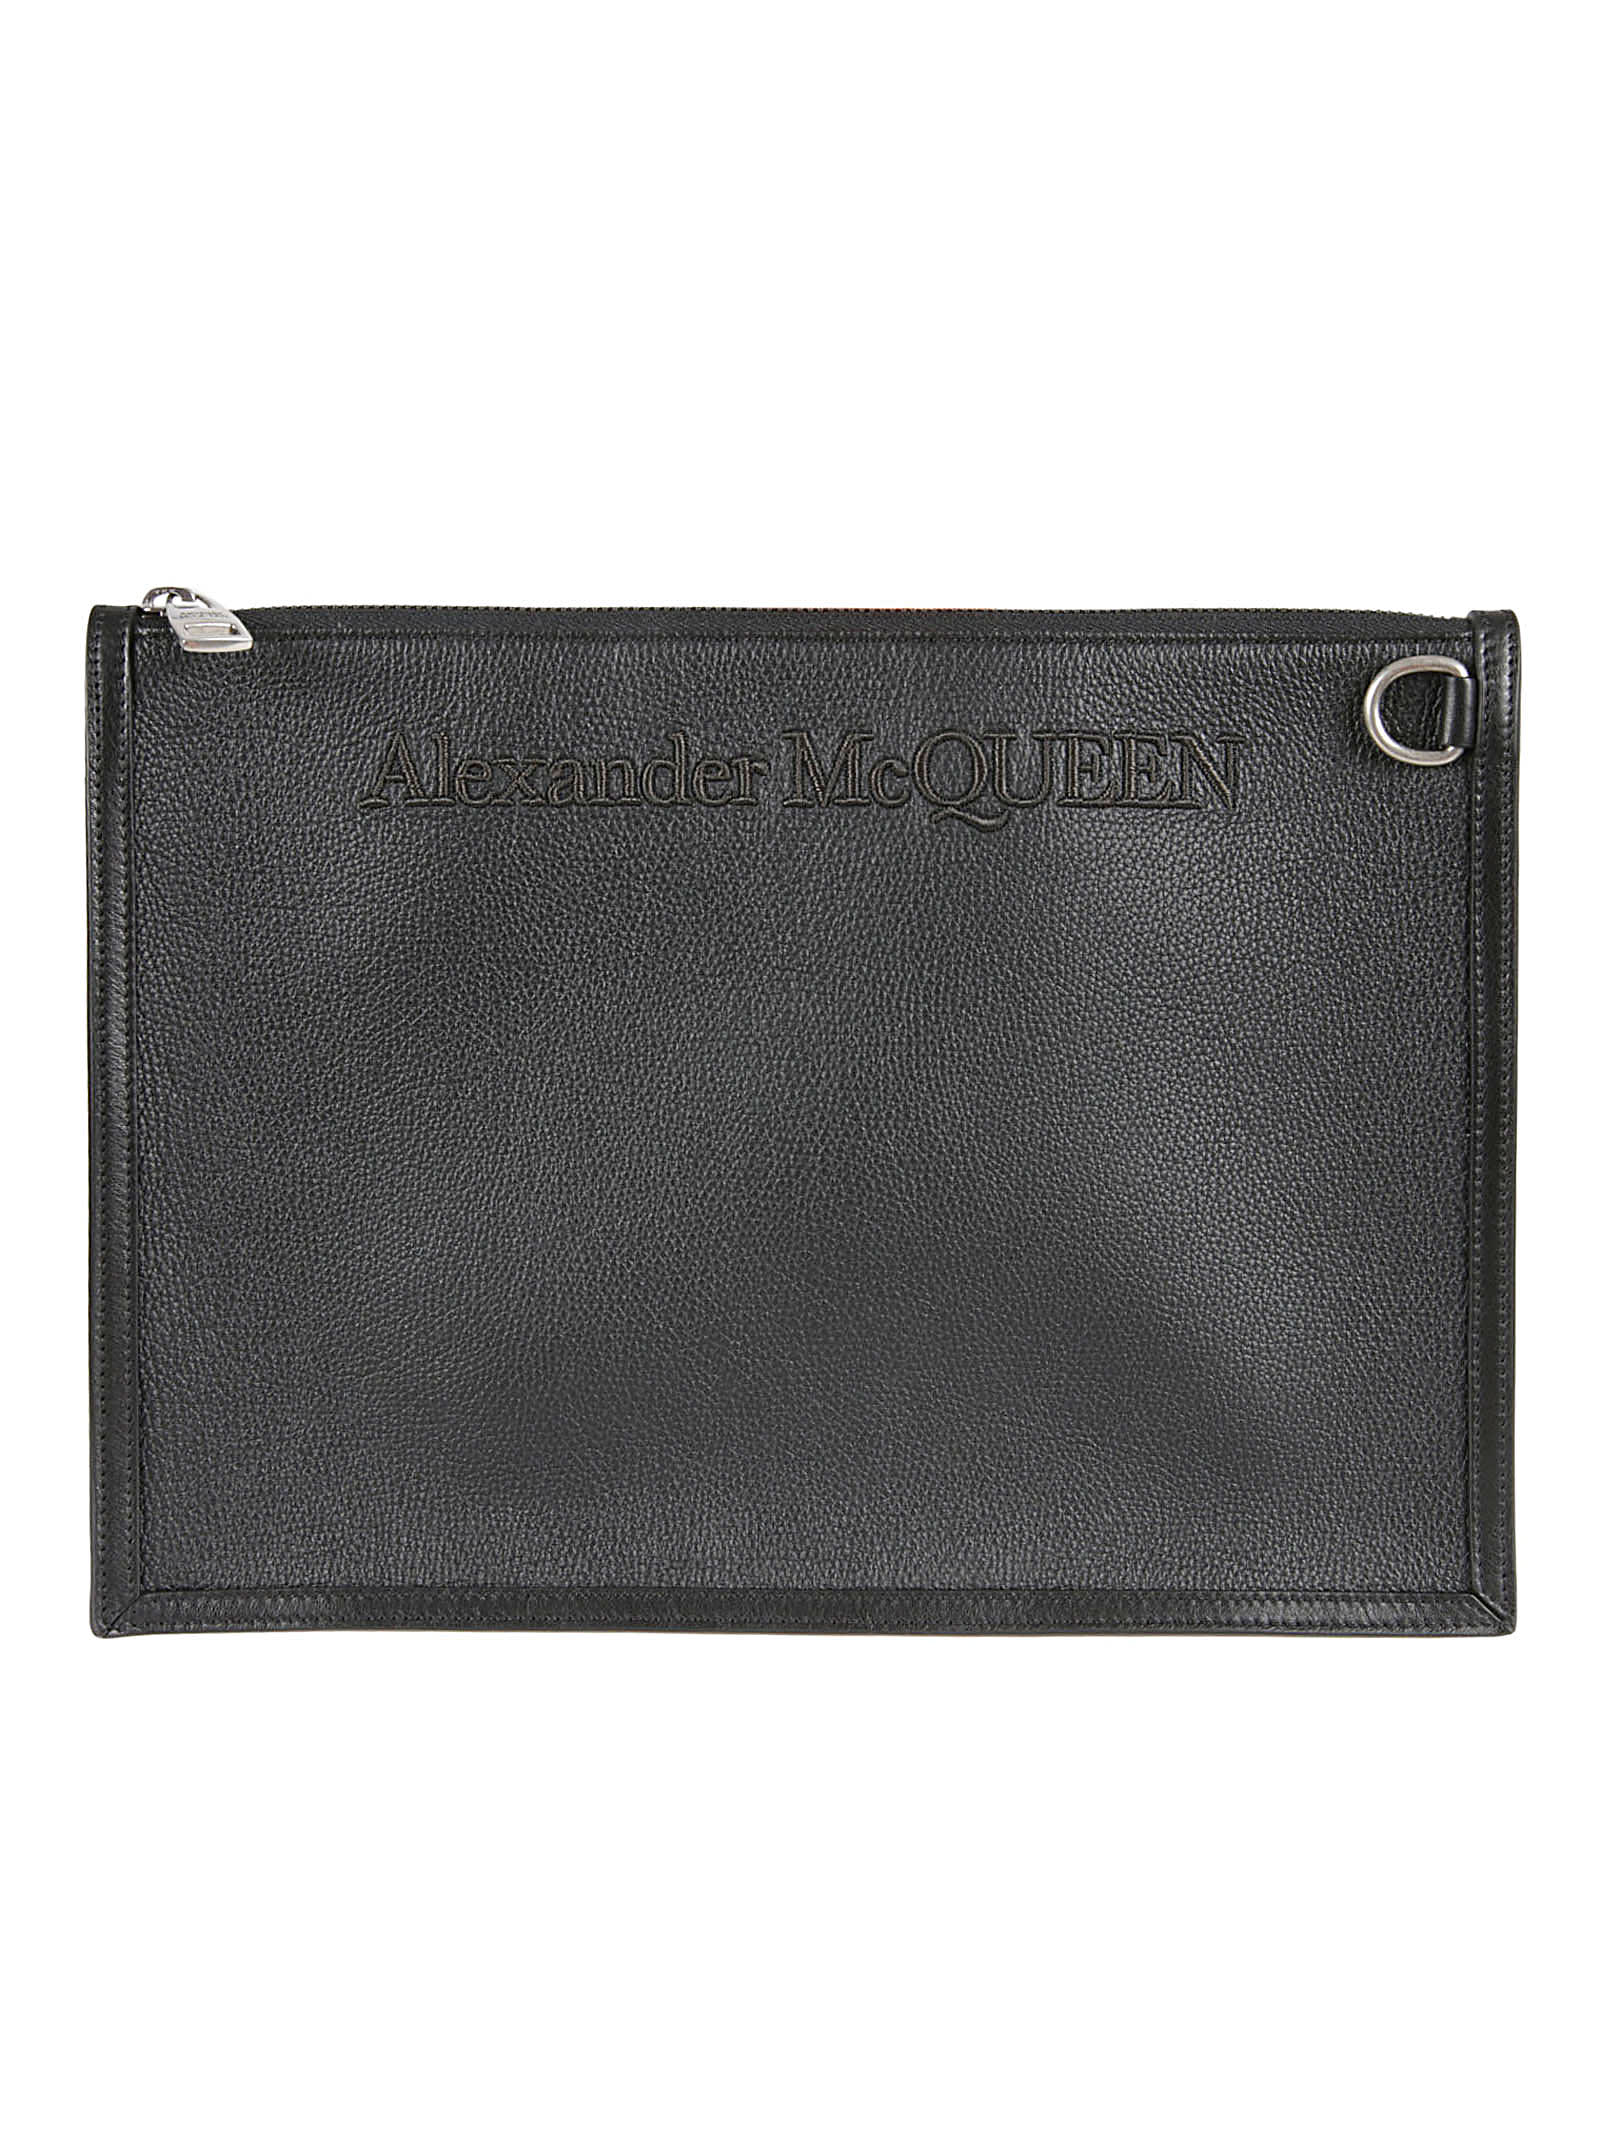 Alexander McQueen Embossed Logo Clutch